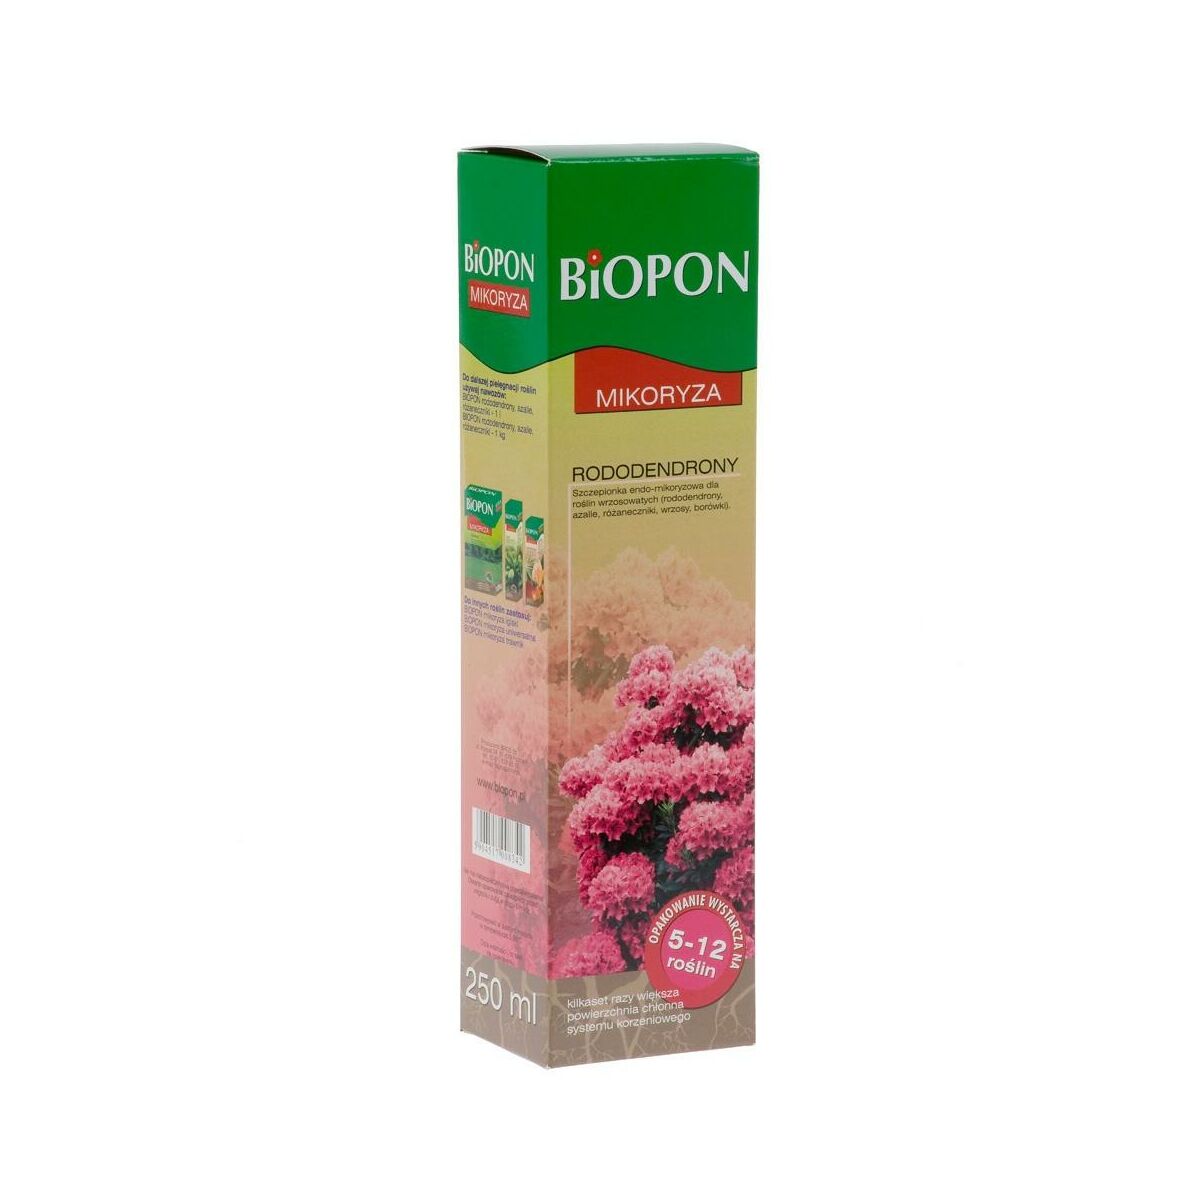 Mikoryza do rododendronów 250ml Biopon 1063